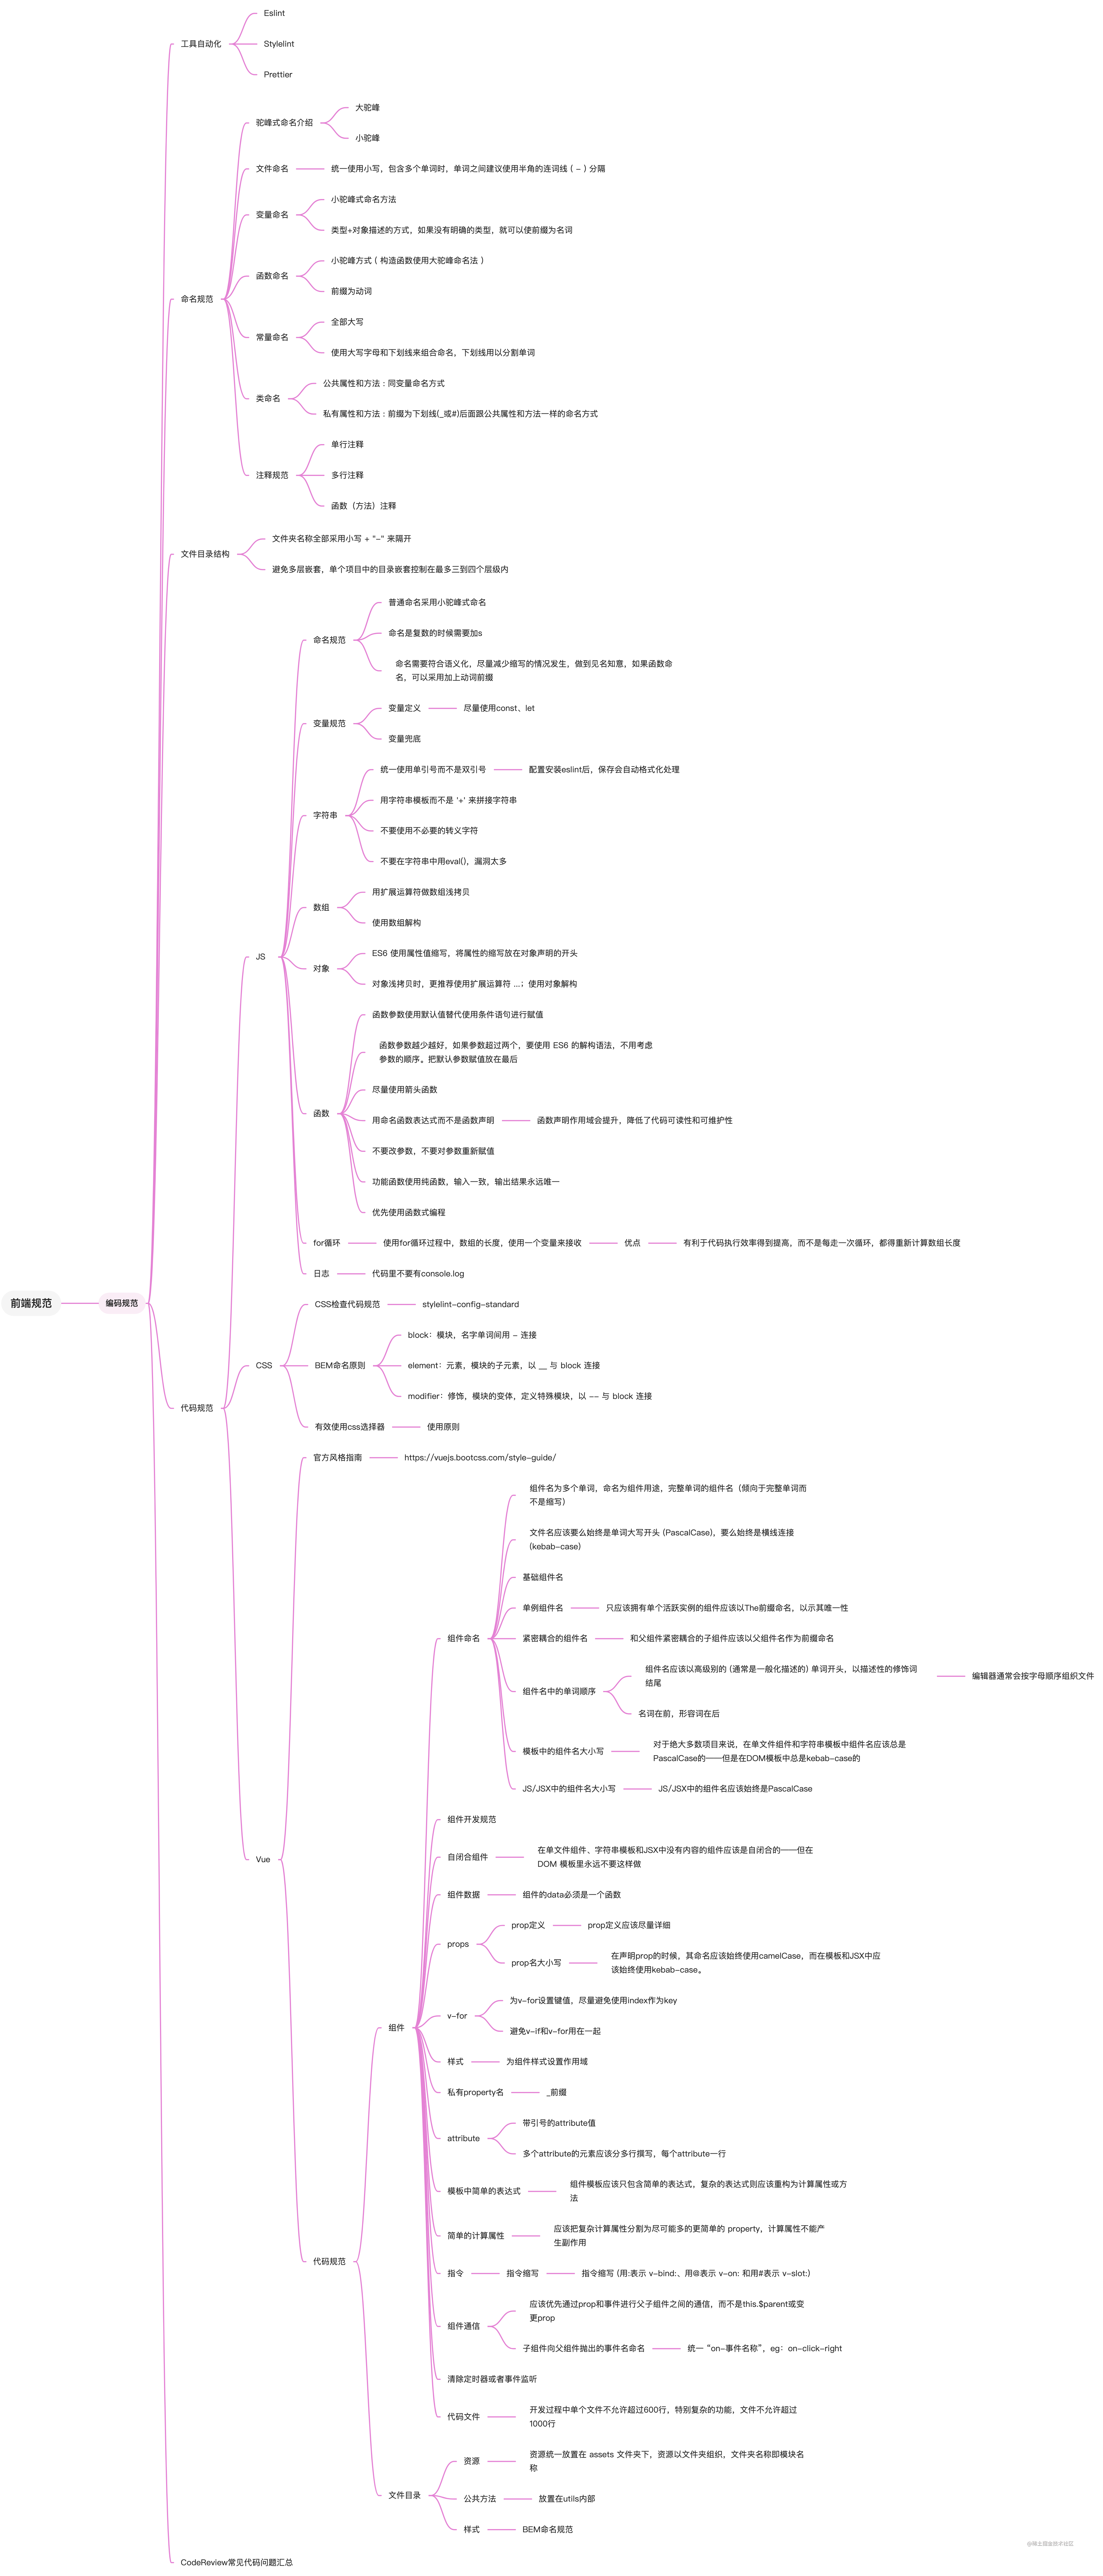 前端代码开发规范思维导图 (1).jpg